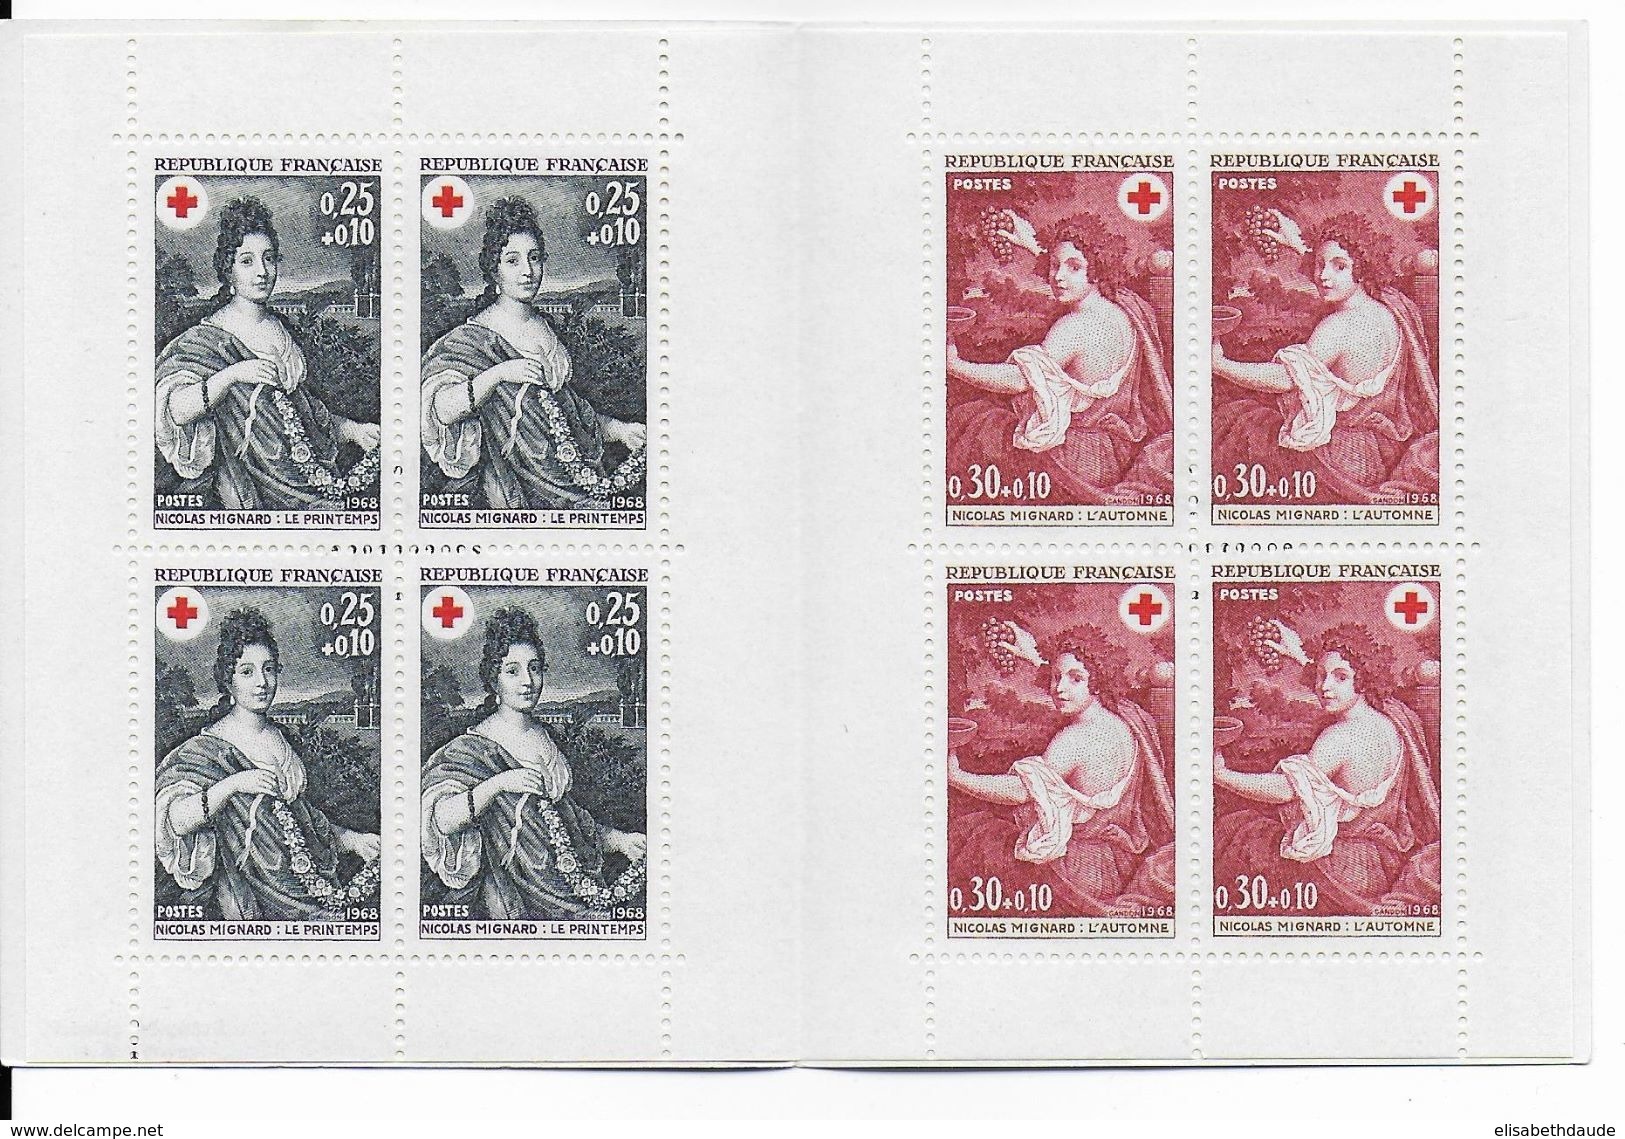 1968 - PORT GRATUIT à PARTIR 5 EUR D'ACHAT / FREE POSTAGE IF YOU BUY MORE 5 EUR ! - CARNET CROIX-ROUGE - RED CROSS - Rotes Kreuz